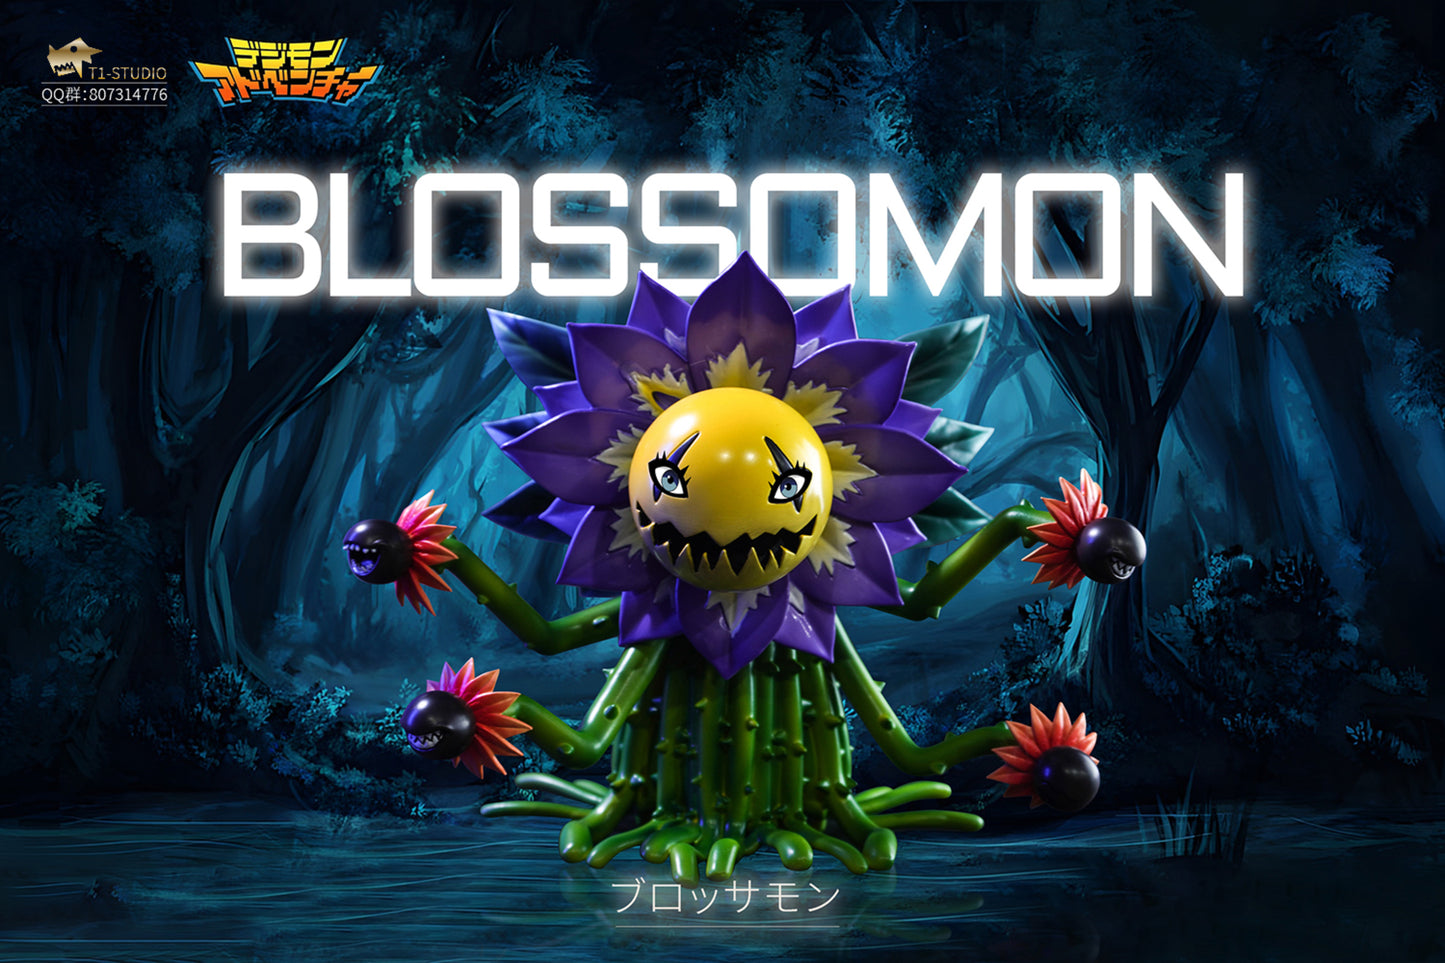 〖Pre-order〗Digimon Blossomon -  T1 Studio